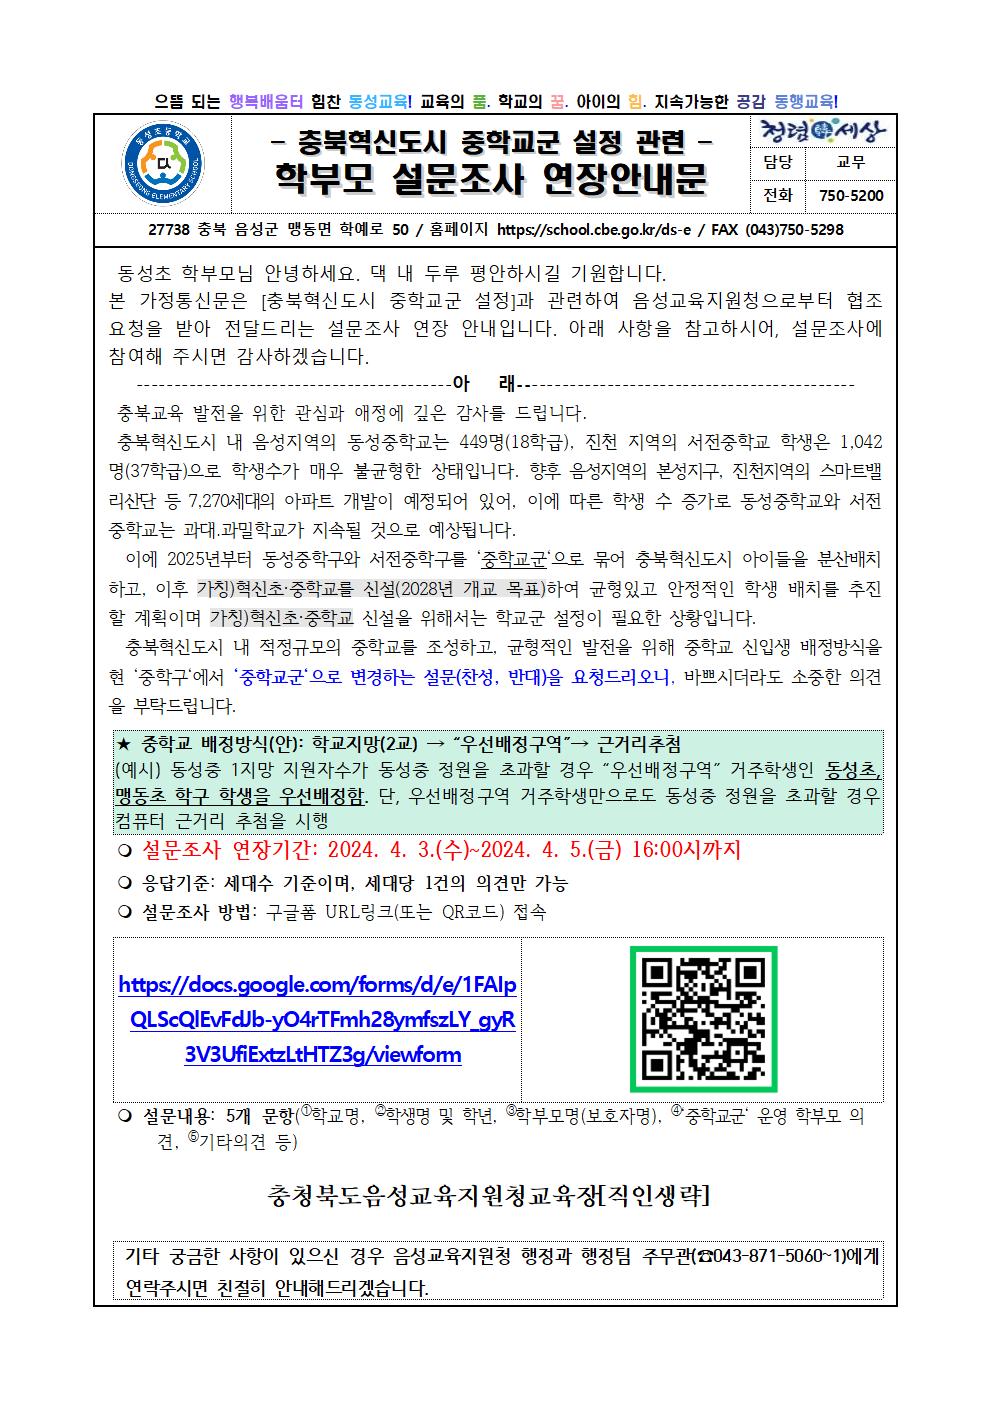 충북혁신도시 중학교군 설정 학부모 설문조사 연장 안내문001